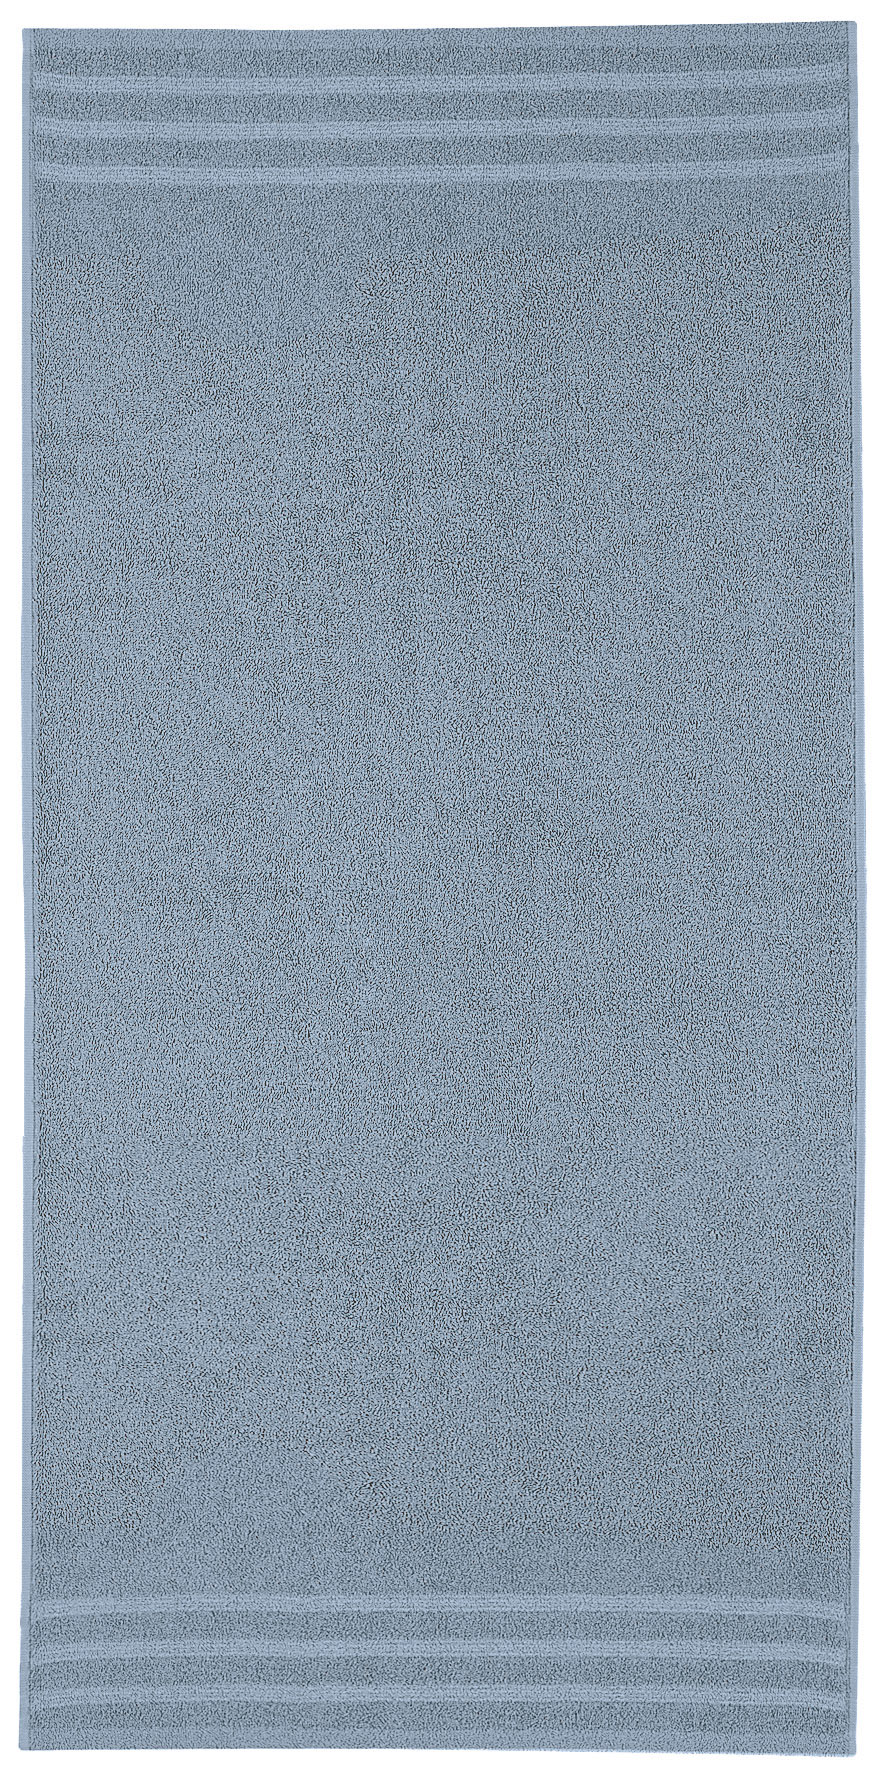 Duschtuch, Royal Stahlblau, 70x140 cm